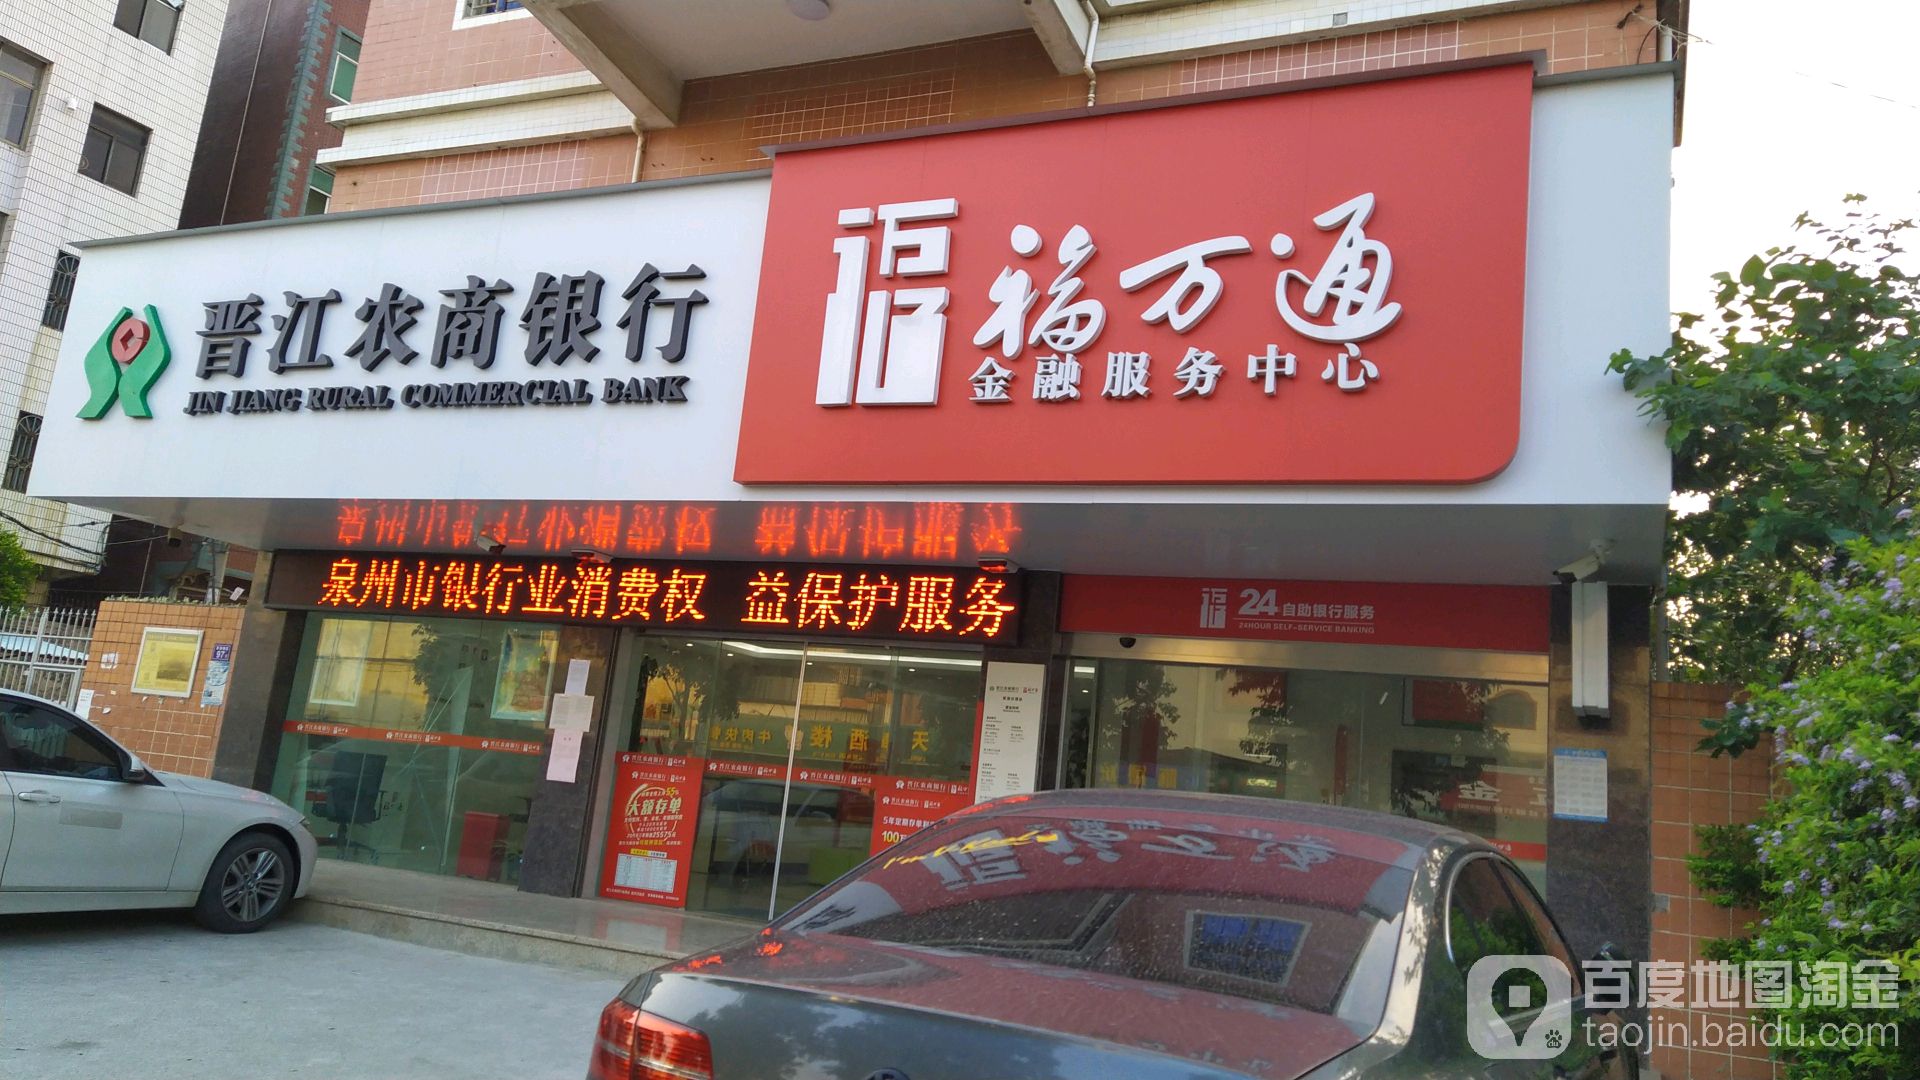 晉江市農村商業銀行24小時自助銀行(草湖分理處)